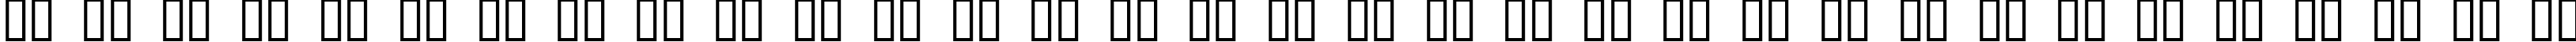 Пример написания русского алфавита шрифтом Idiot